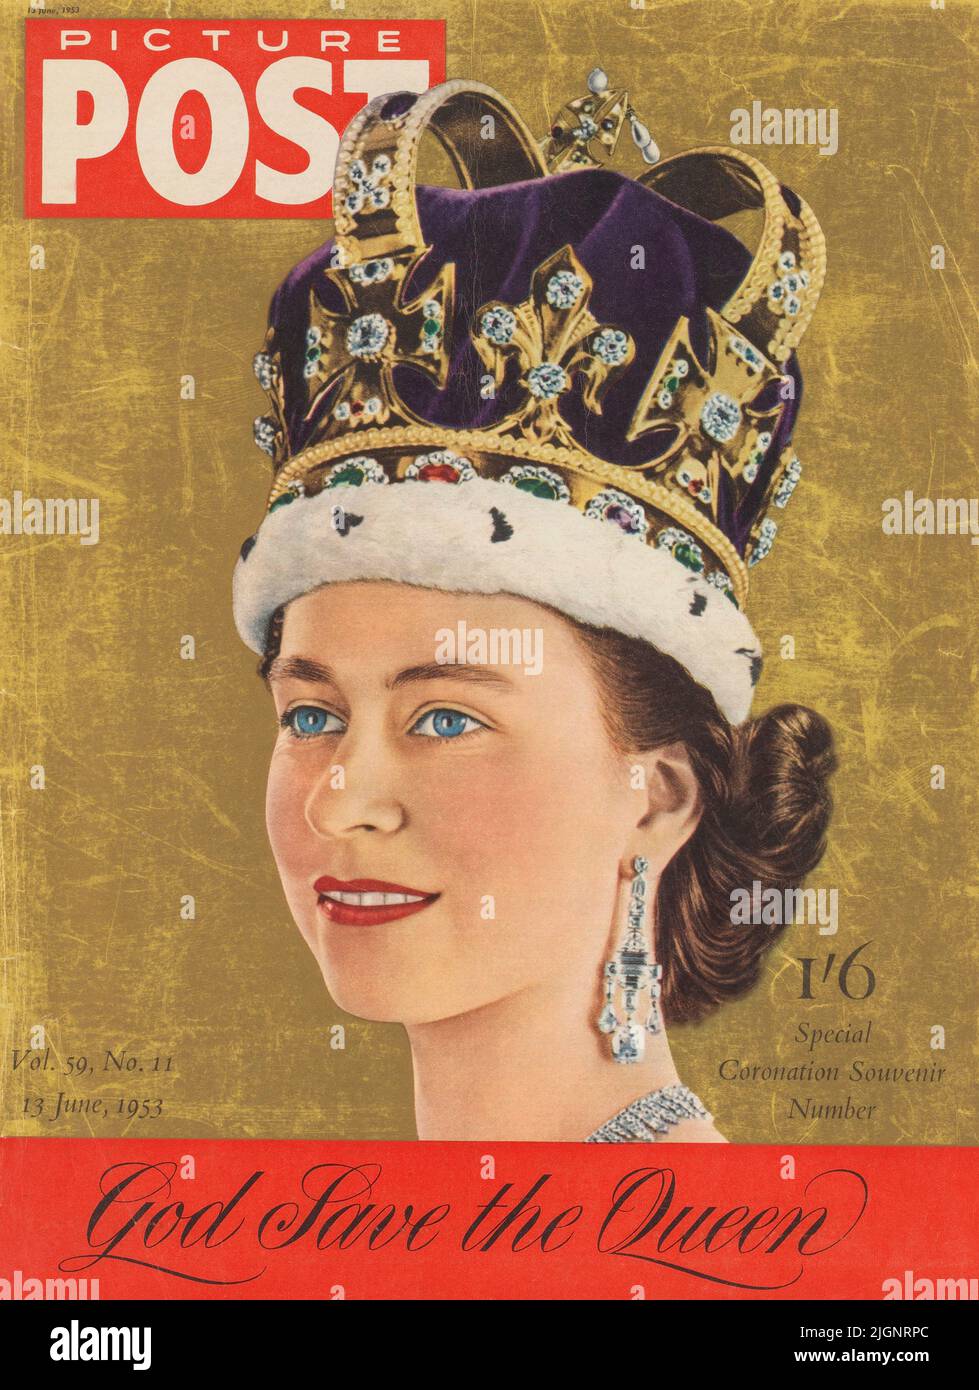 Special Coronation Souvenir, junio de 1953. Homenaje de la revista Picture Post a la Reina Isabel II (1926 - 2022) después de su coronación. SÓLO EDITORIAL. Foto de stock